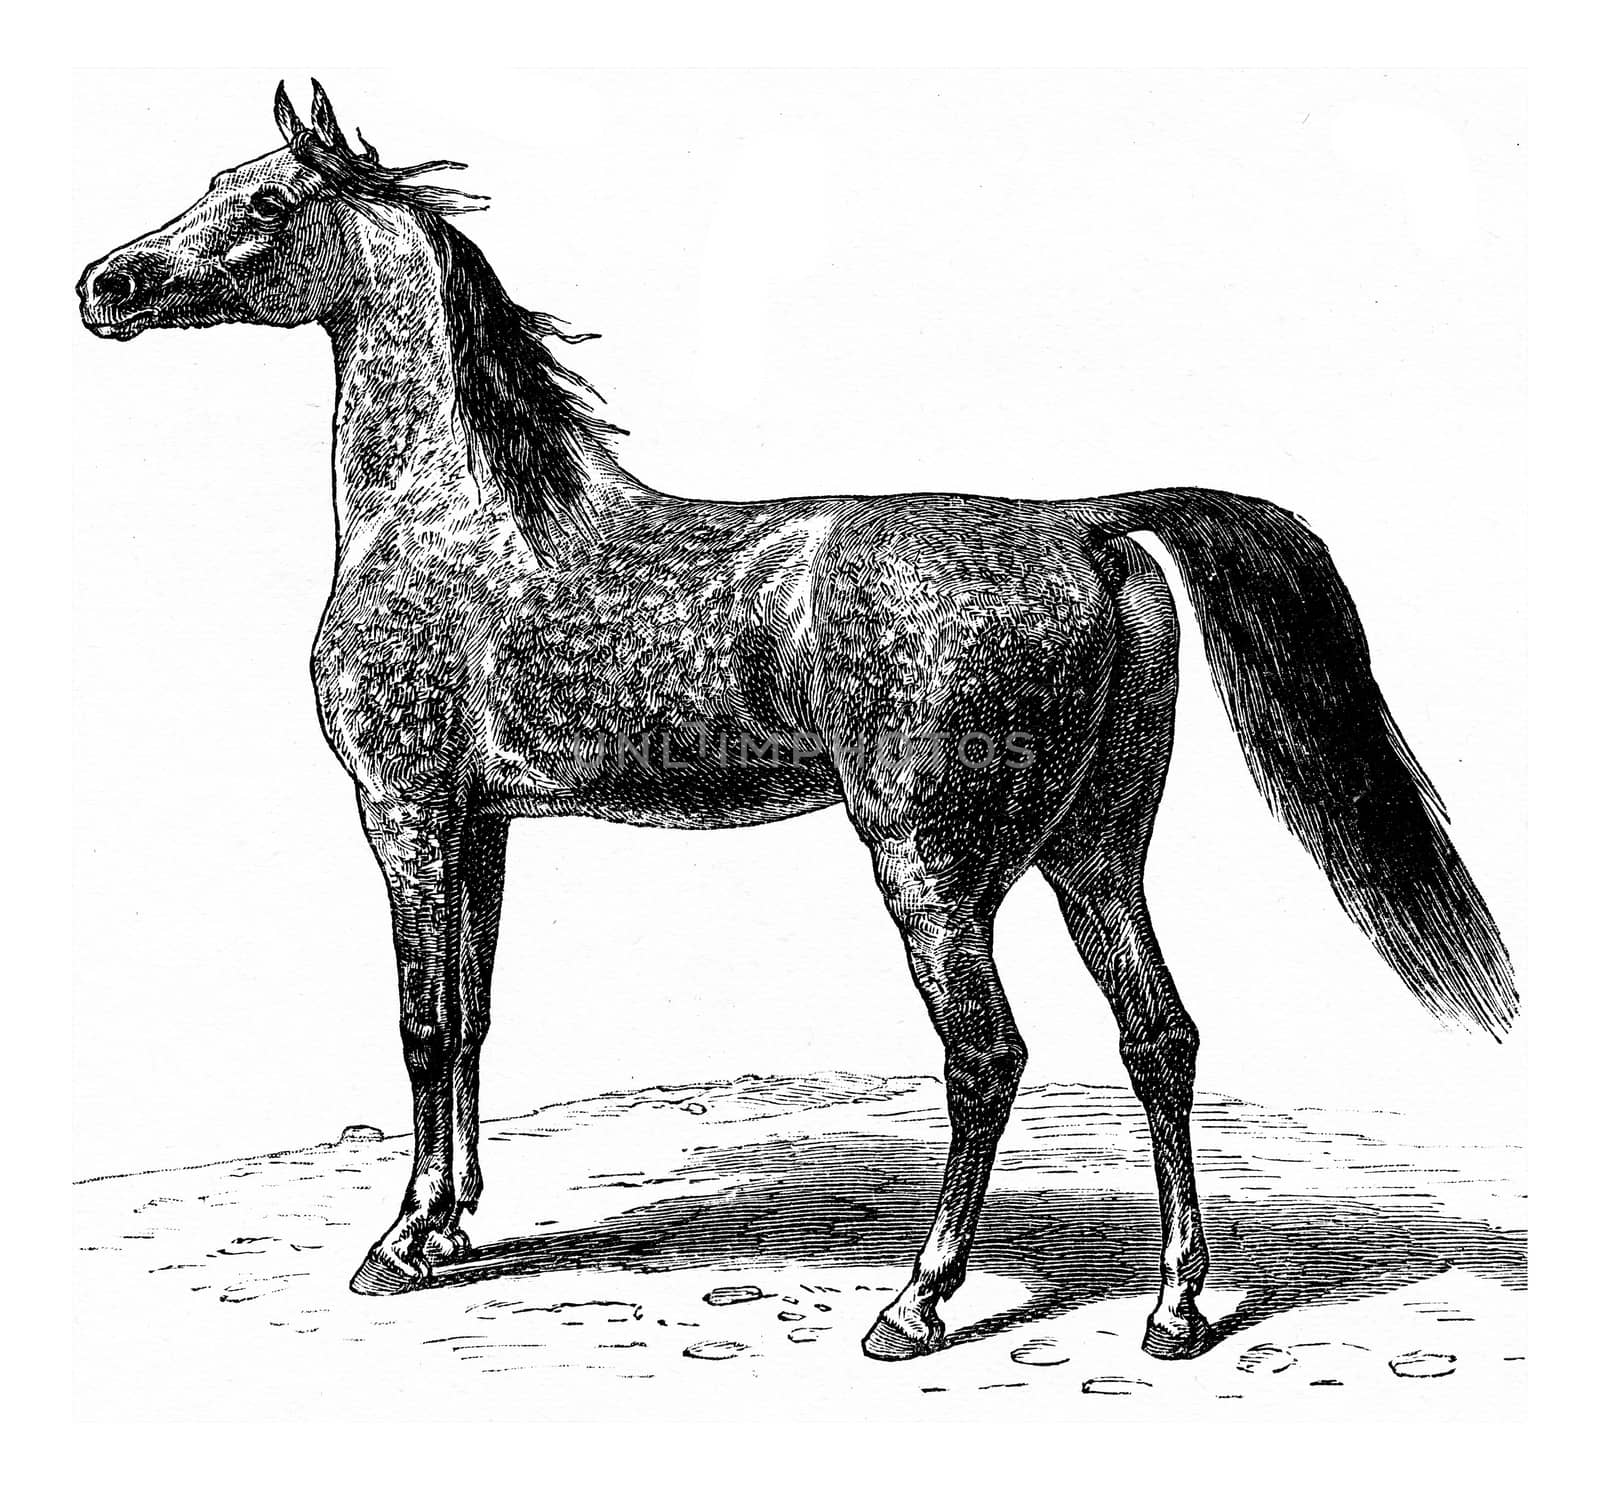 Horse, vintage engraved illustration. La Vie dans la nature, 1890.
